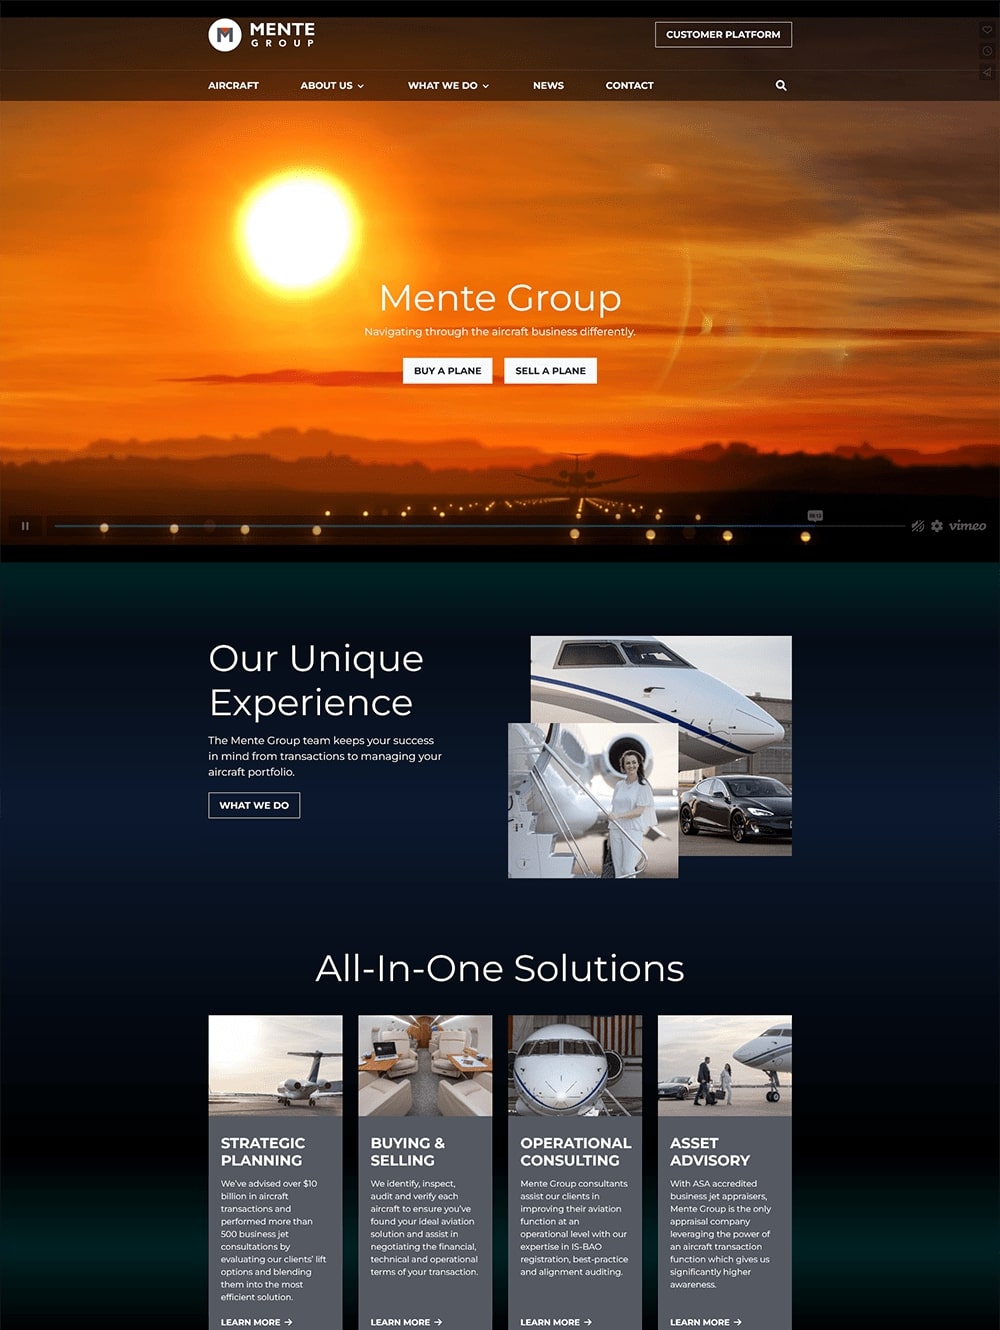 Mente Group Aviation Sales Website Designed By Seota Digital Marketing Frisco, TX